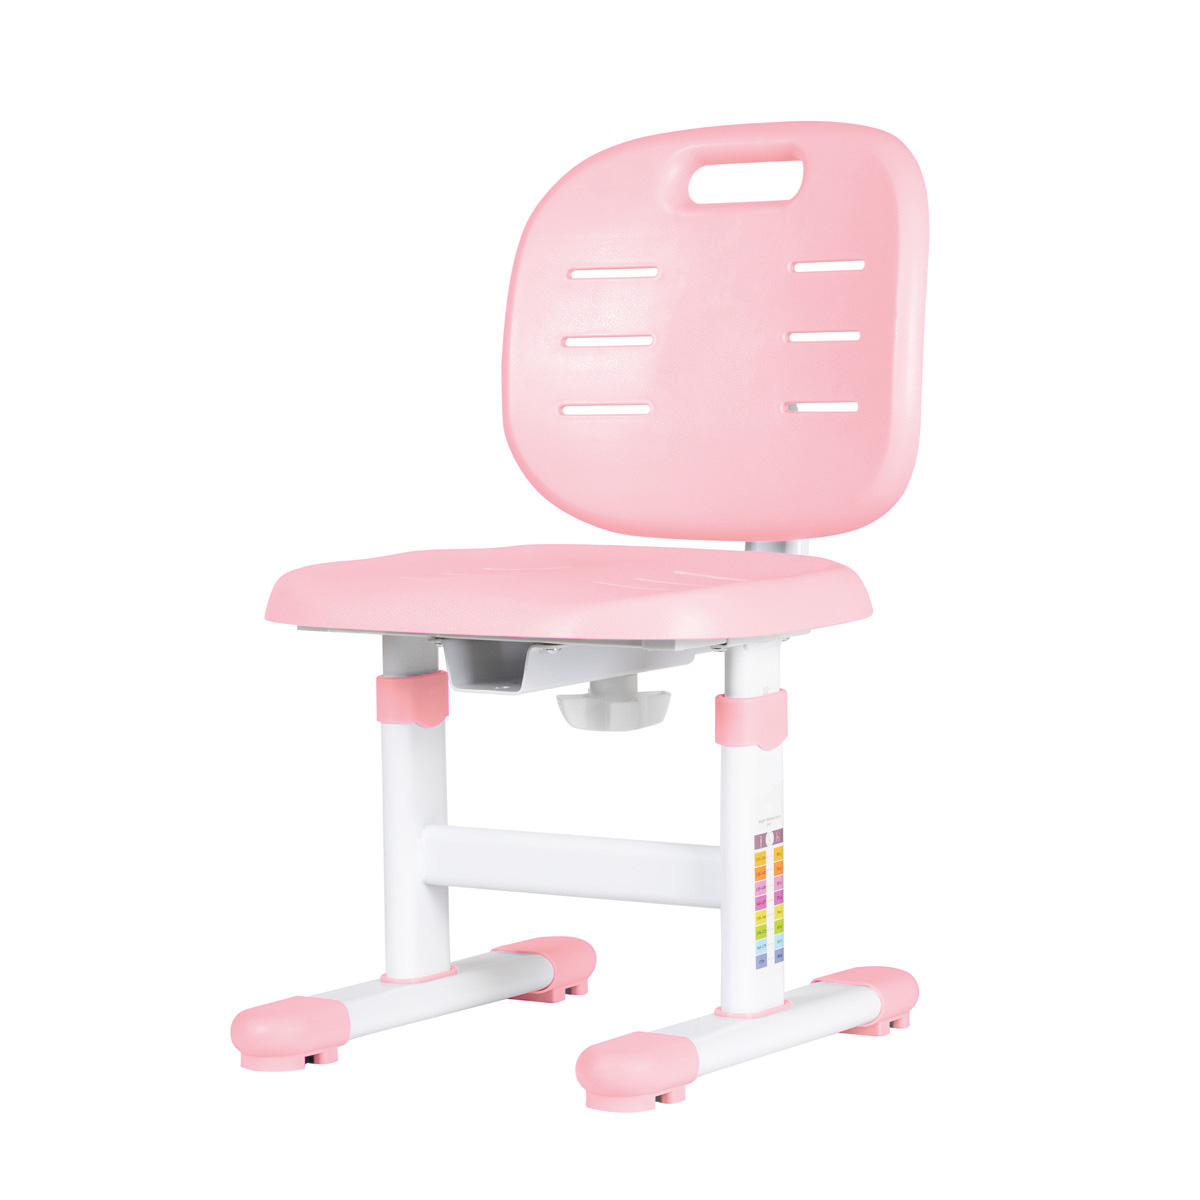 Растущий стул Anatomica Lux Pro pink стол стул mowbaby crispy rh150 pink